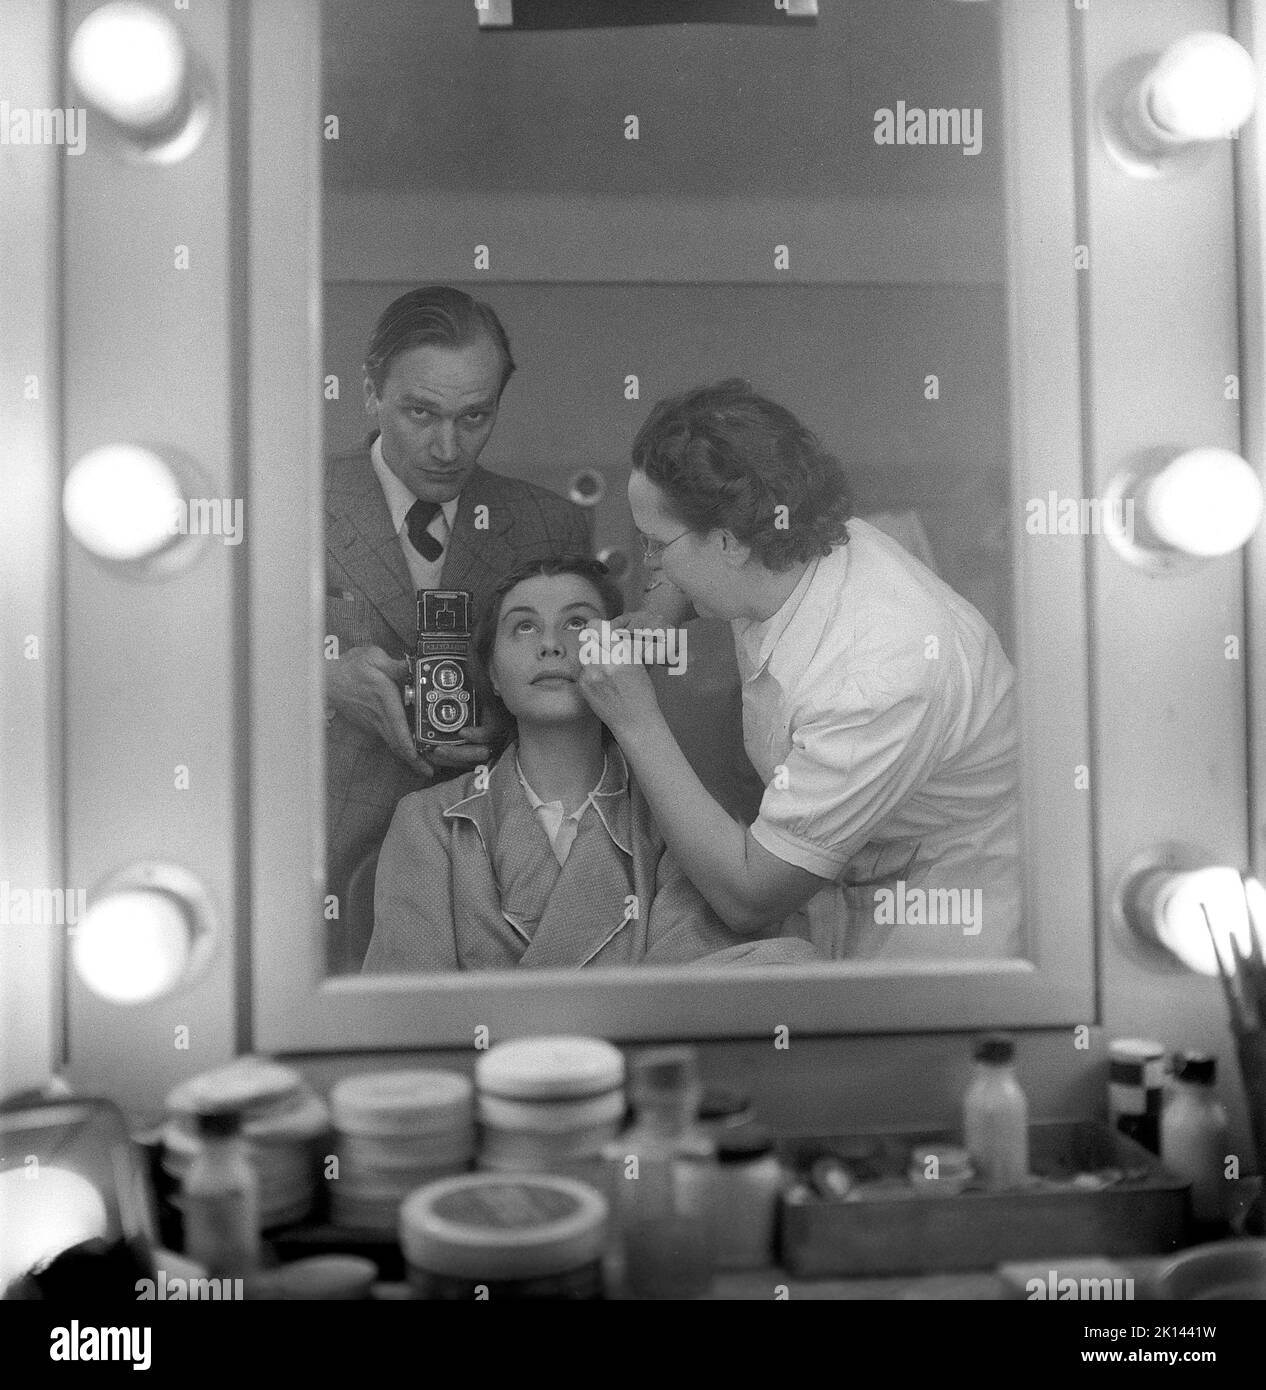 Make-up in der 1950s. Bevor sie am Filmset arbeitete, bekommt die Schauspielerin Maj-Britt Nilsson von einer Assistentin ein theatrales Make-up. Beachten Sie, dass sich der Fotograf im Spiegel selbst ins Bild einfügt. Schweden 1953 Kristoffersson Ref. BL42-3 Stockfoto